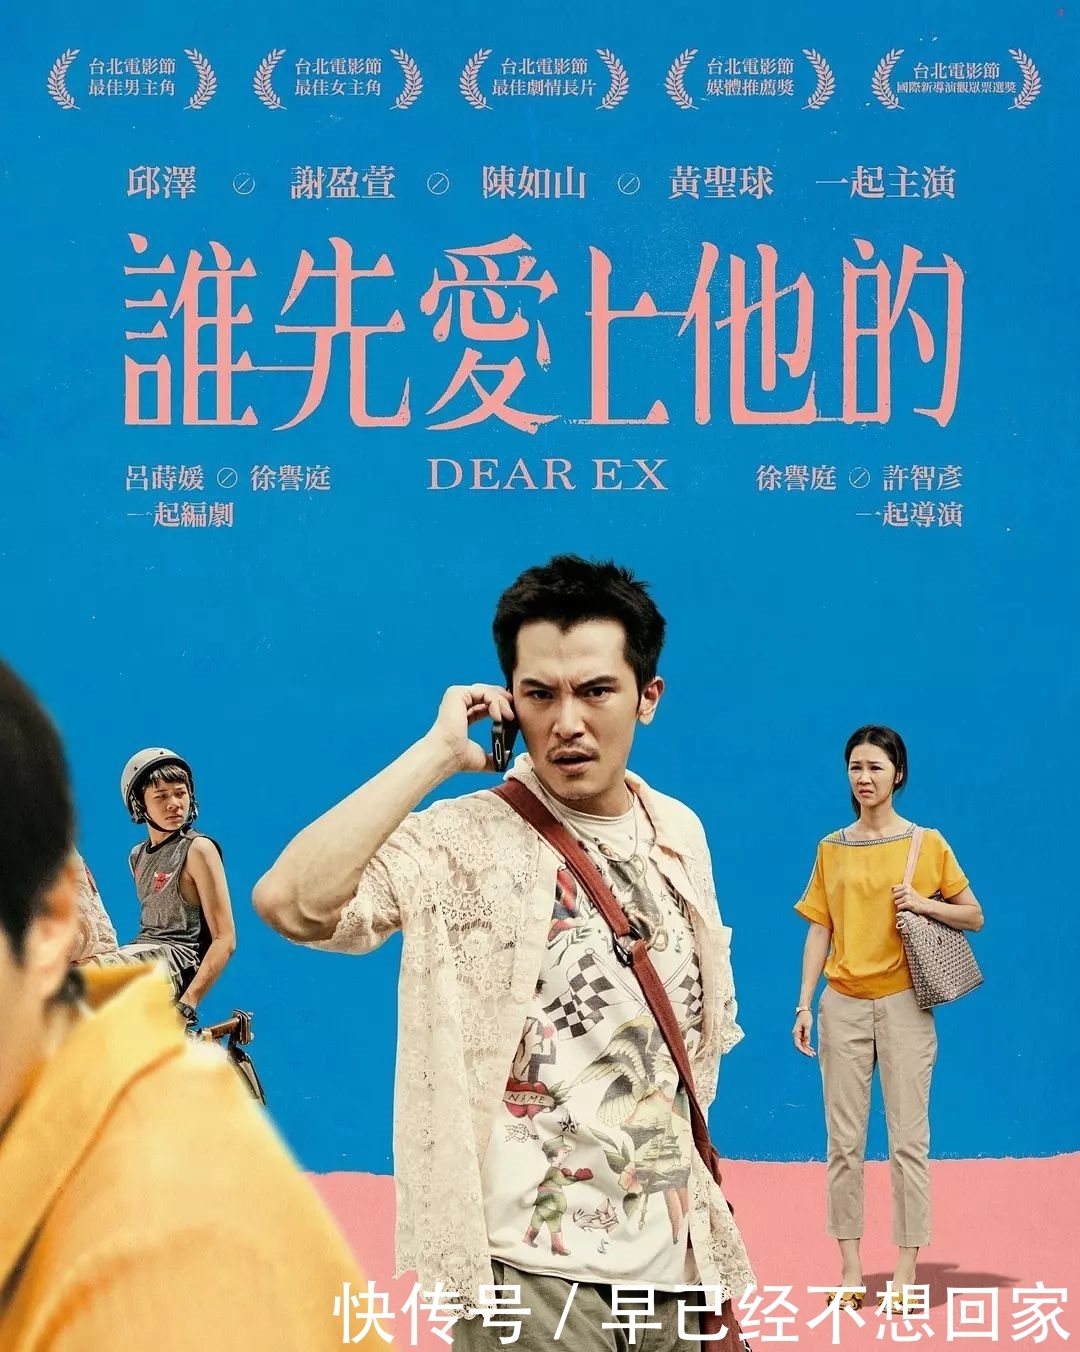 2019年开年最好台湾电影,强烈要求在大陆院线